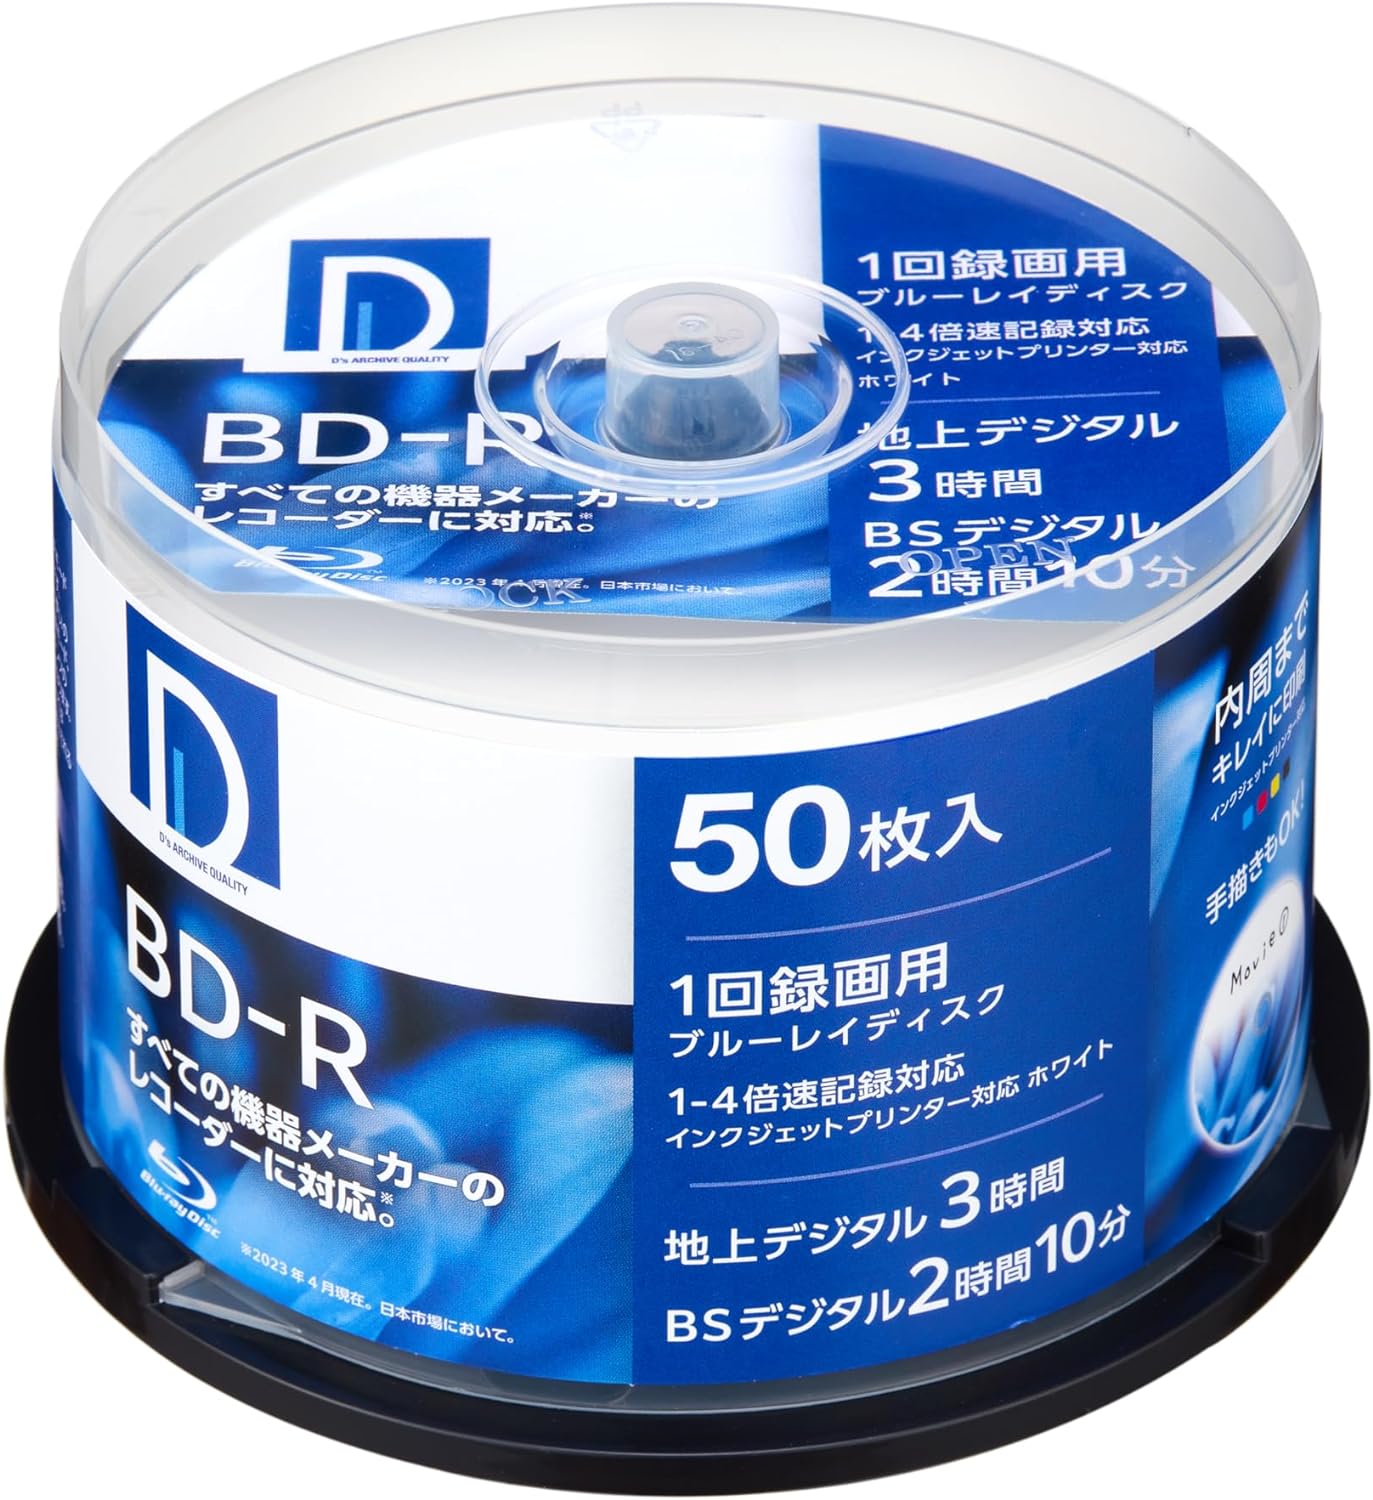 ディーズ・クオリティー D's QUALITY 録画用 BD-R 25GB 1回録画用 1-4倍速 ホワイトレーベル 50枚 スピンドルケース BR25DP.50SP